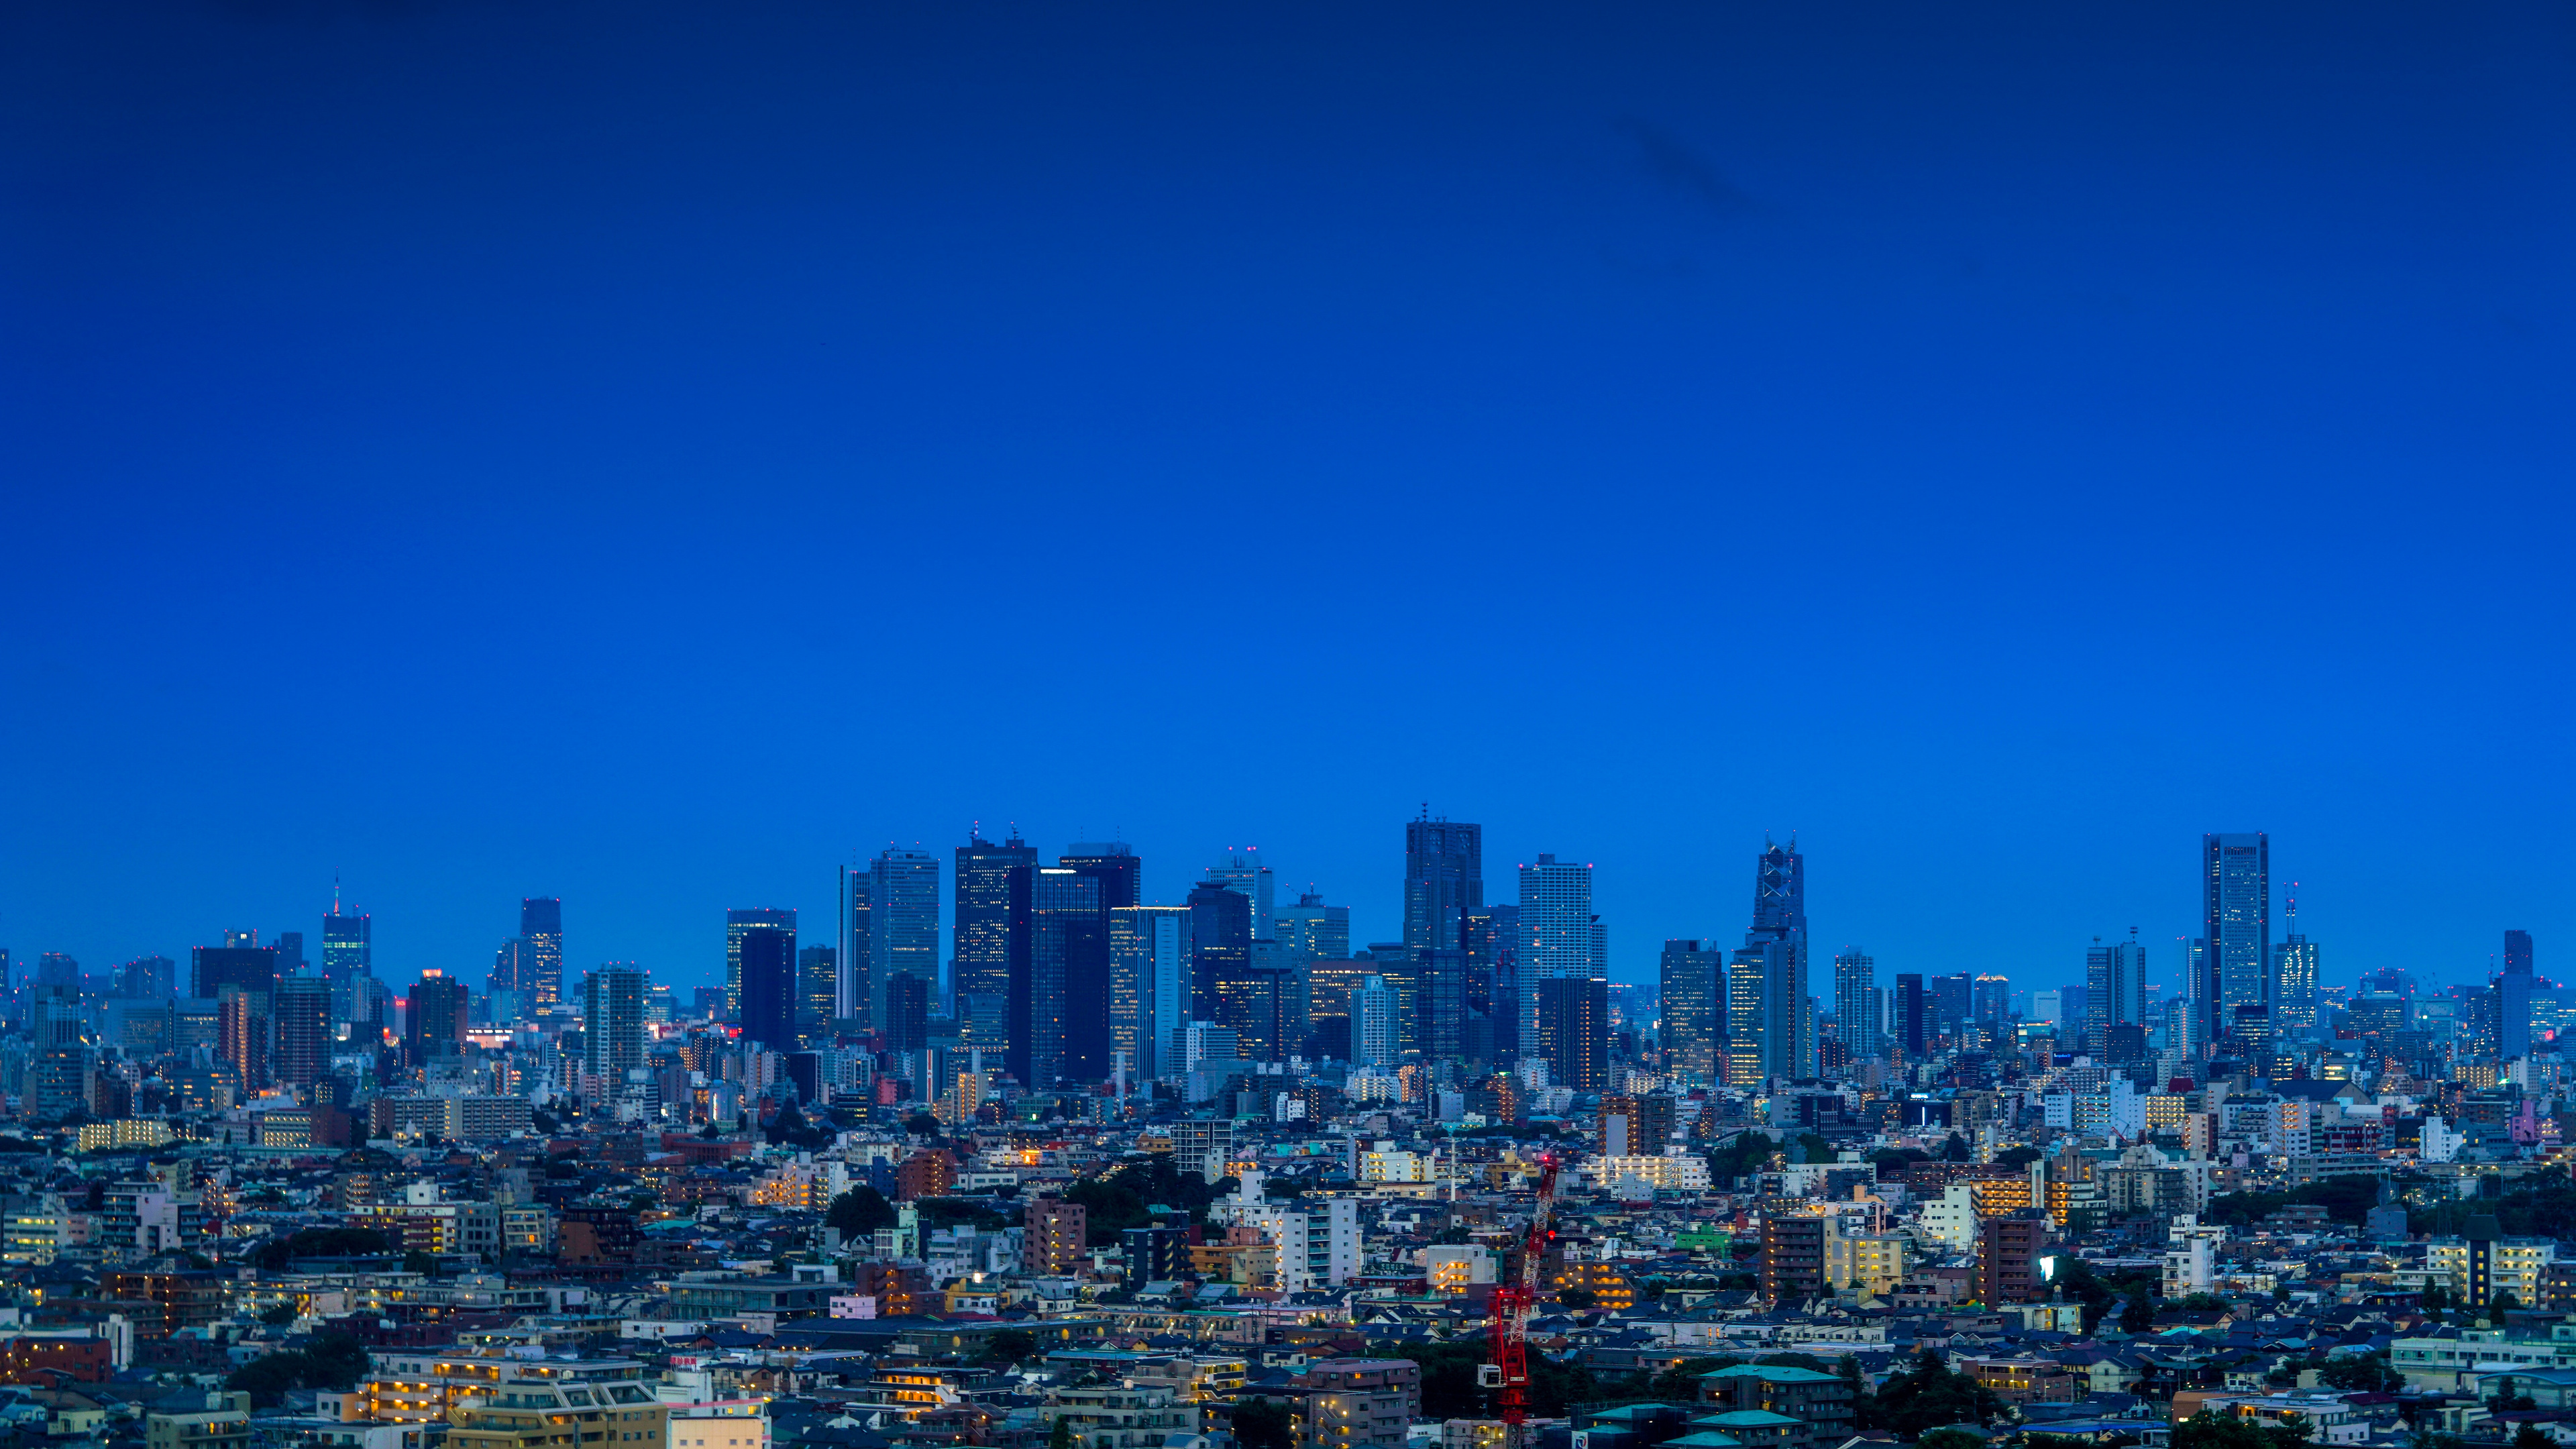 Ciudad Con Edificios de Gran Altura Bajo un Cielo Azul Durante el Día. Wallpaper in 3840x2160 Resolution